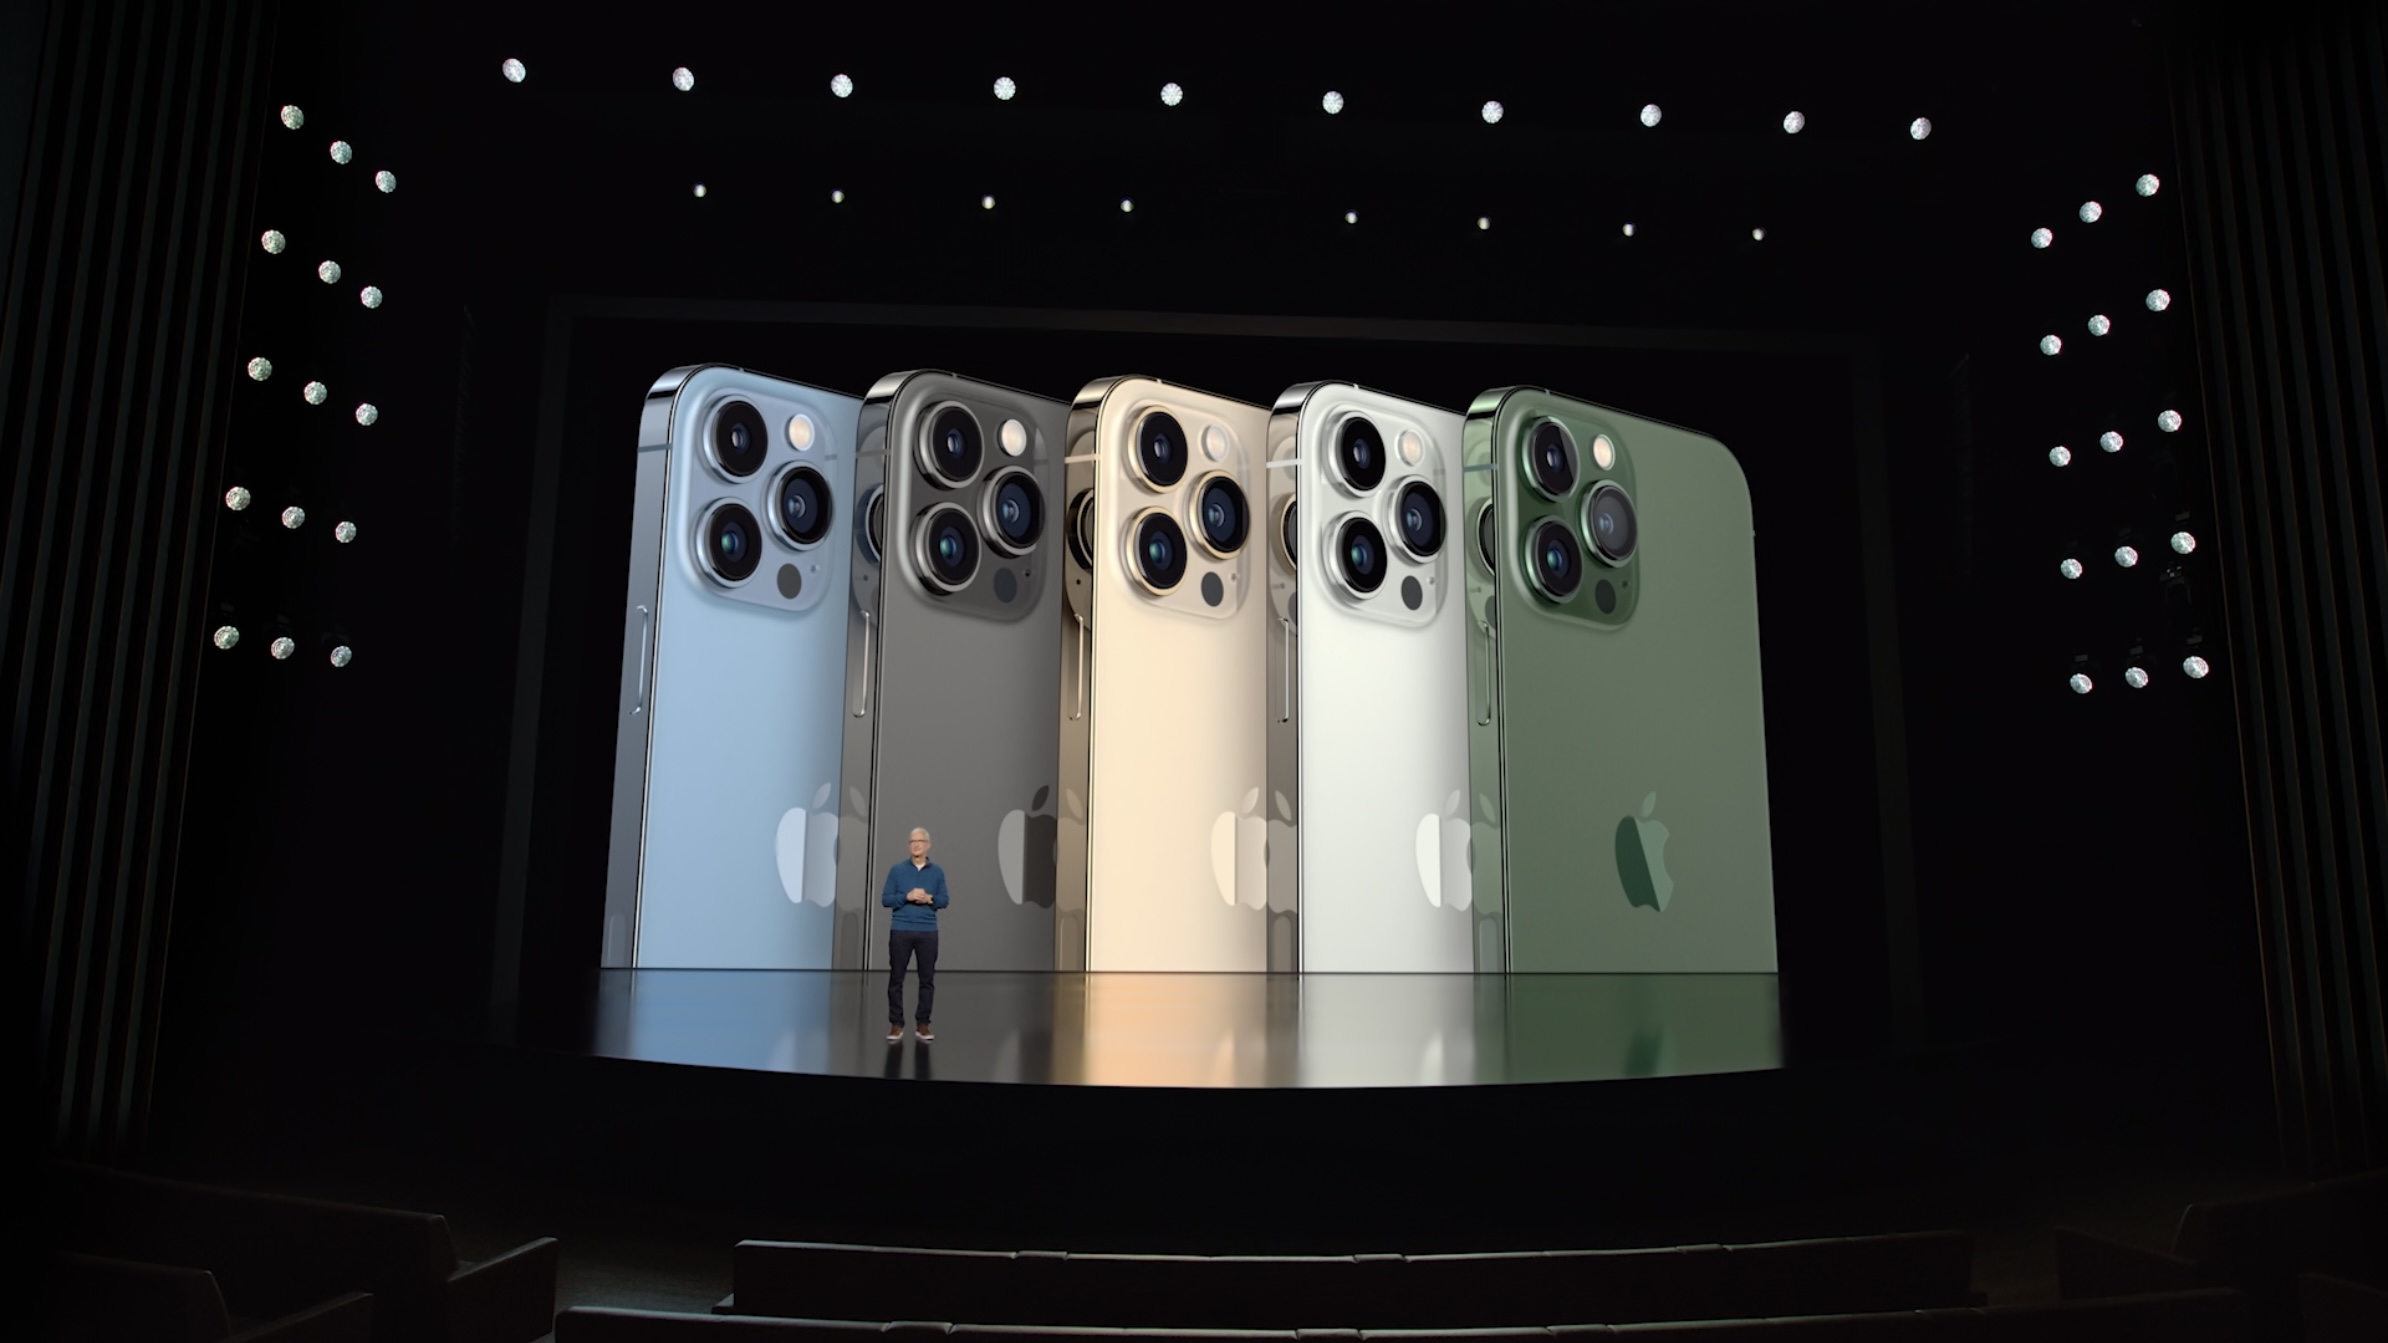 iPhone 13 綠色、iPhone 13 Pro 松嶺青色、Apple 2022 春季發表會